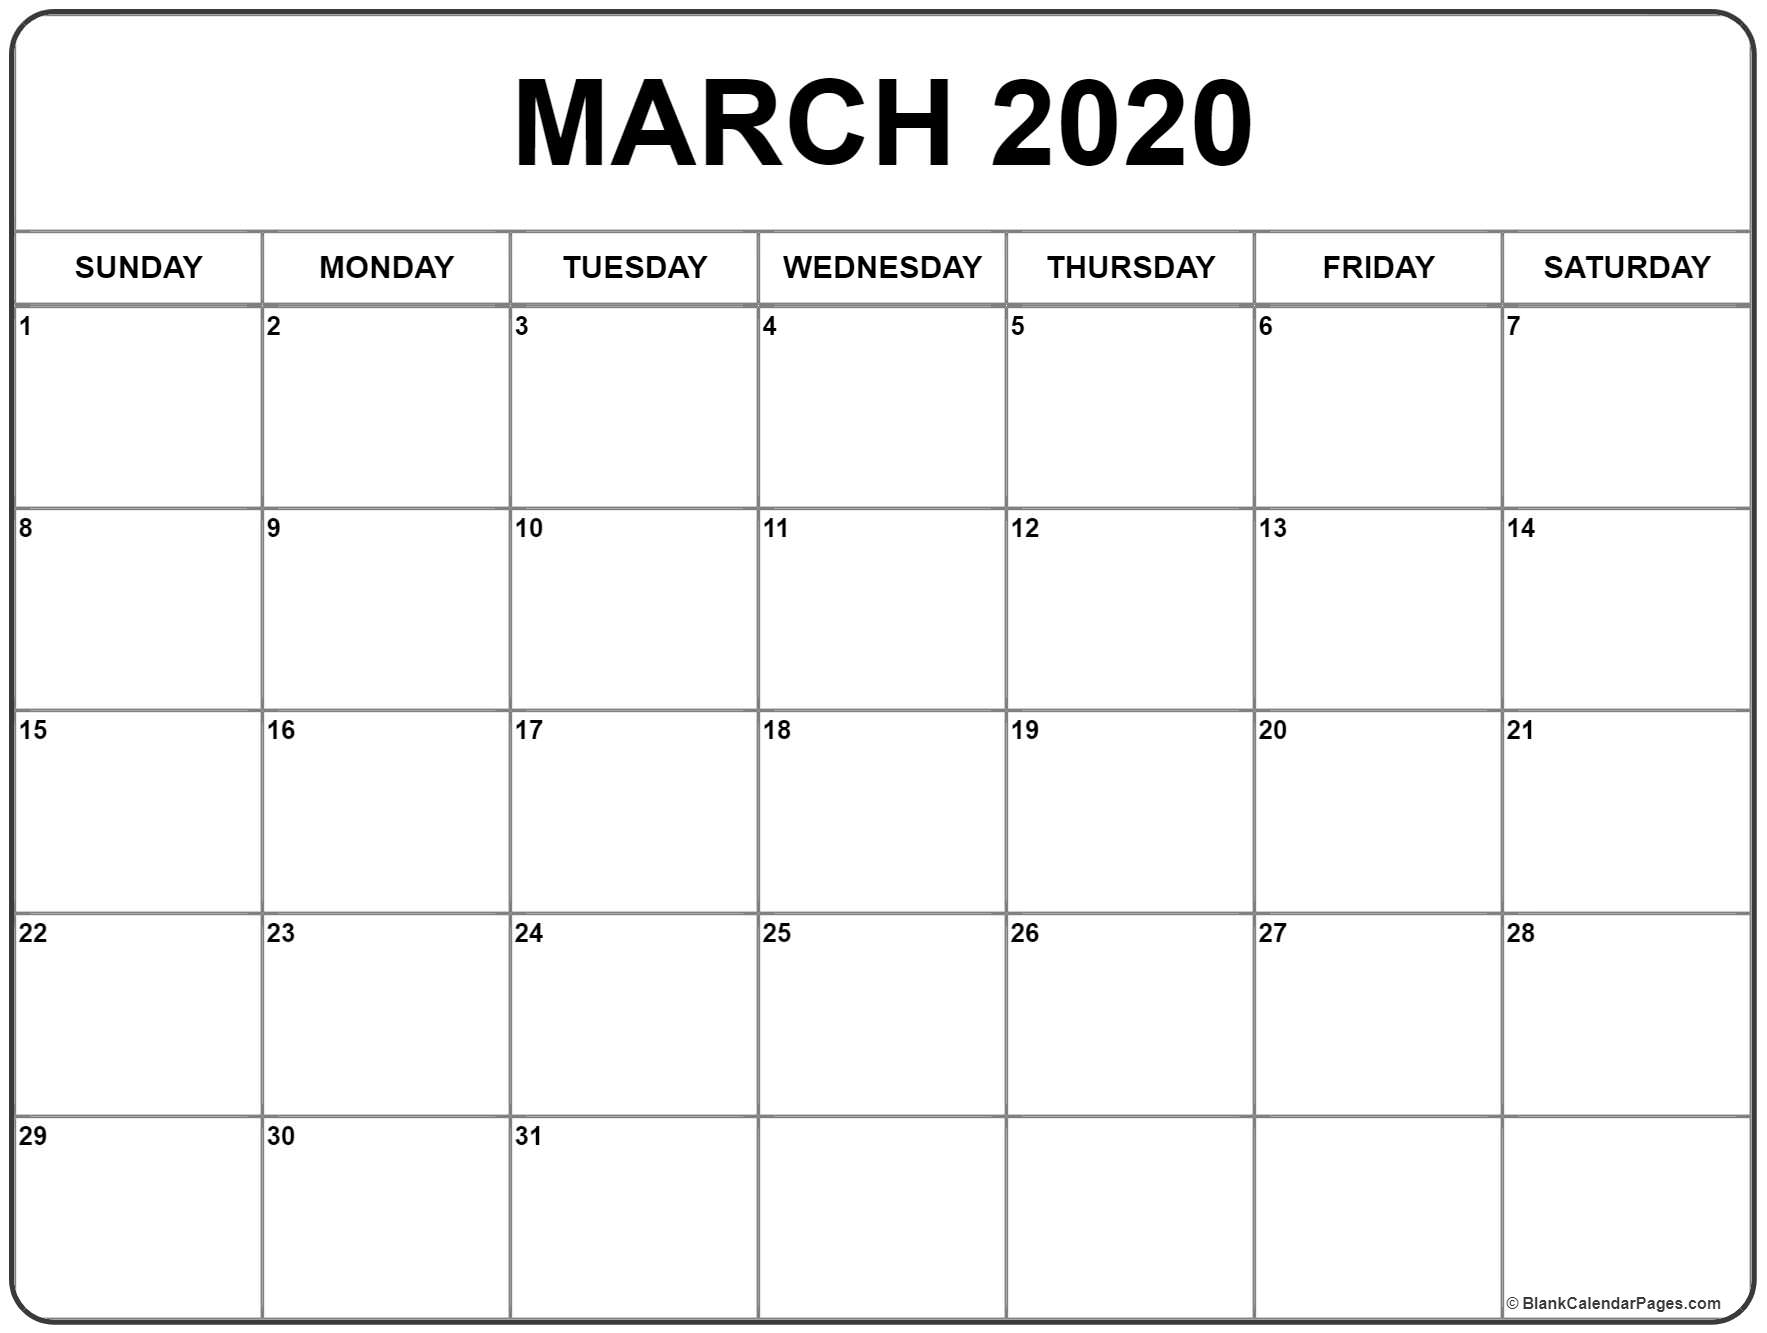 Calendars Michel Zbinden 2020 | Calendar For Planning inside Calendars Michel Zbinden